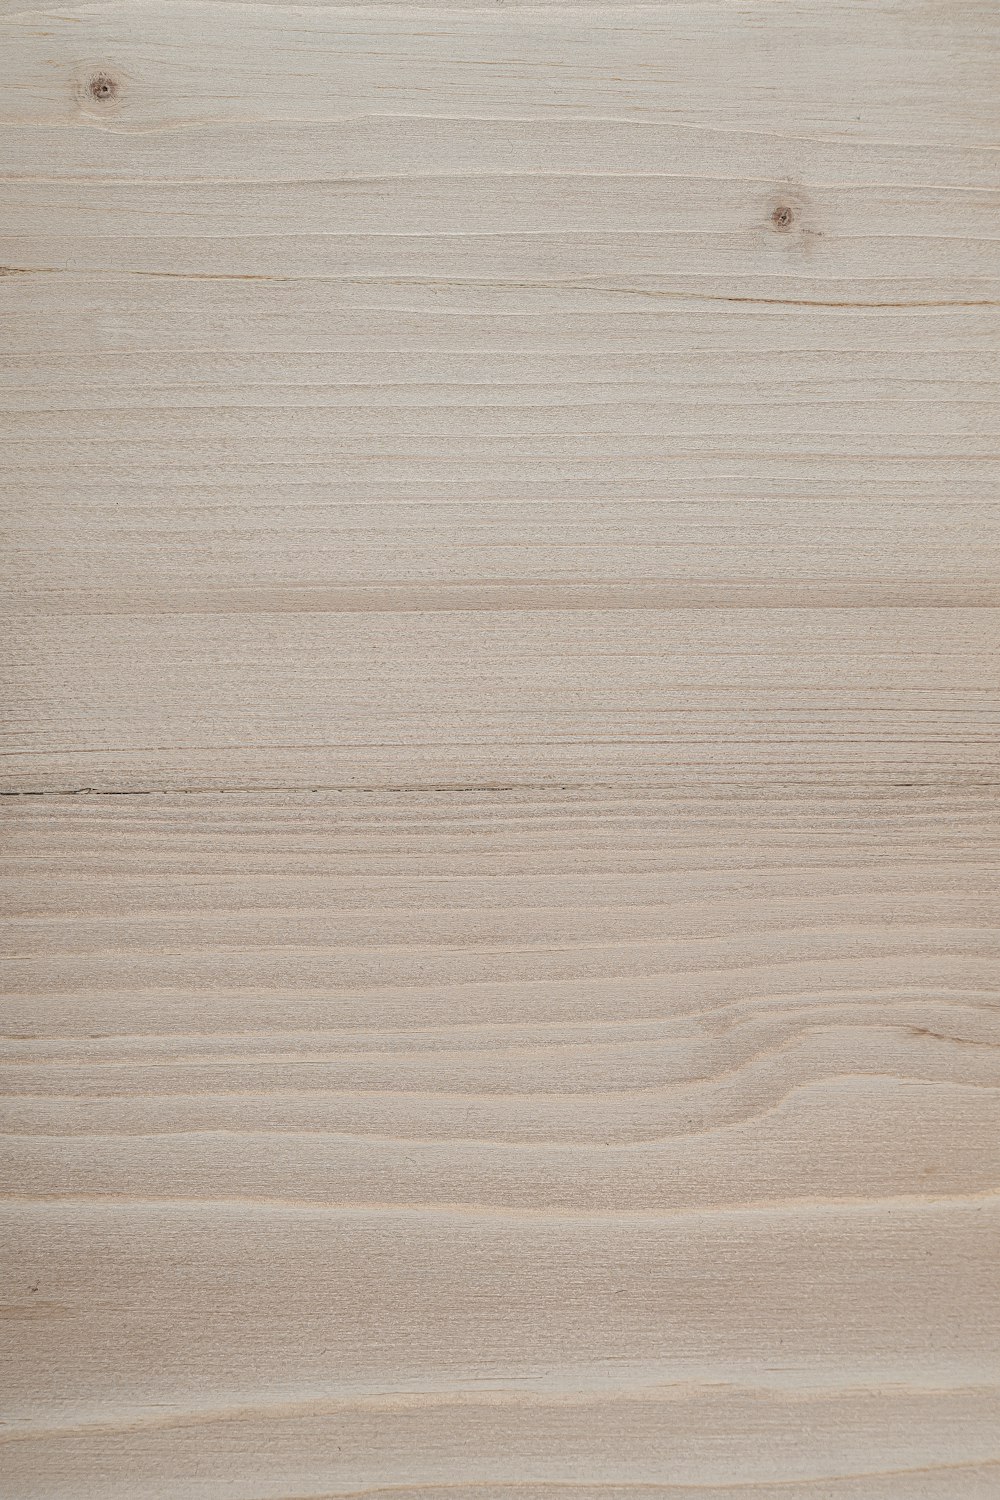 un morceau de bois coupé en deux